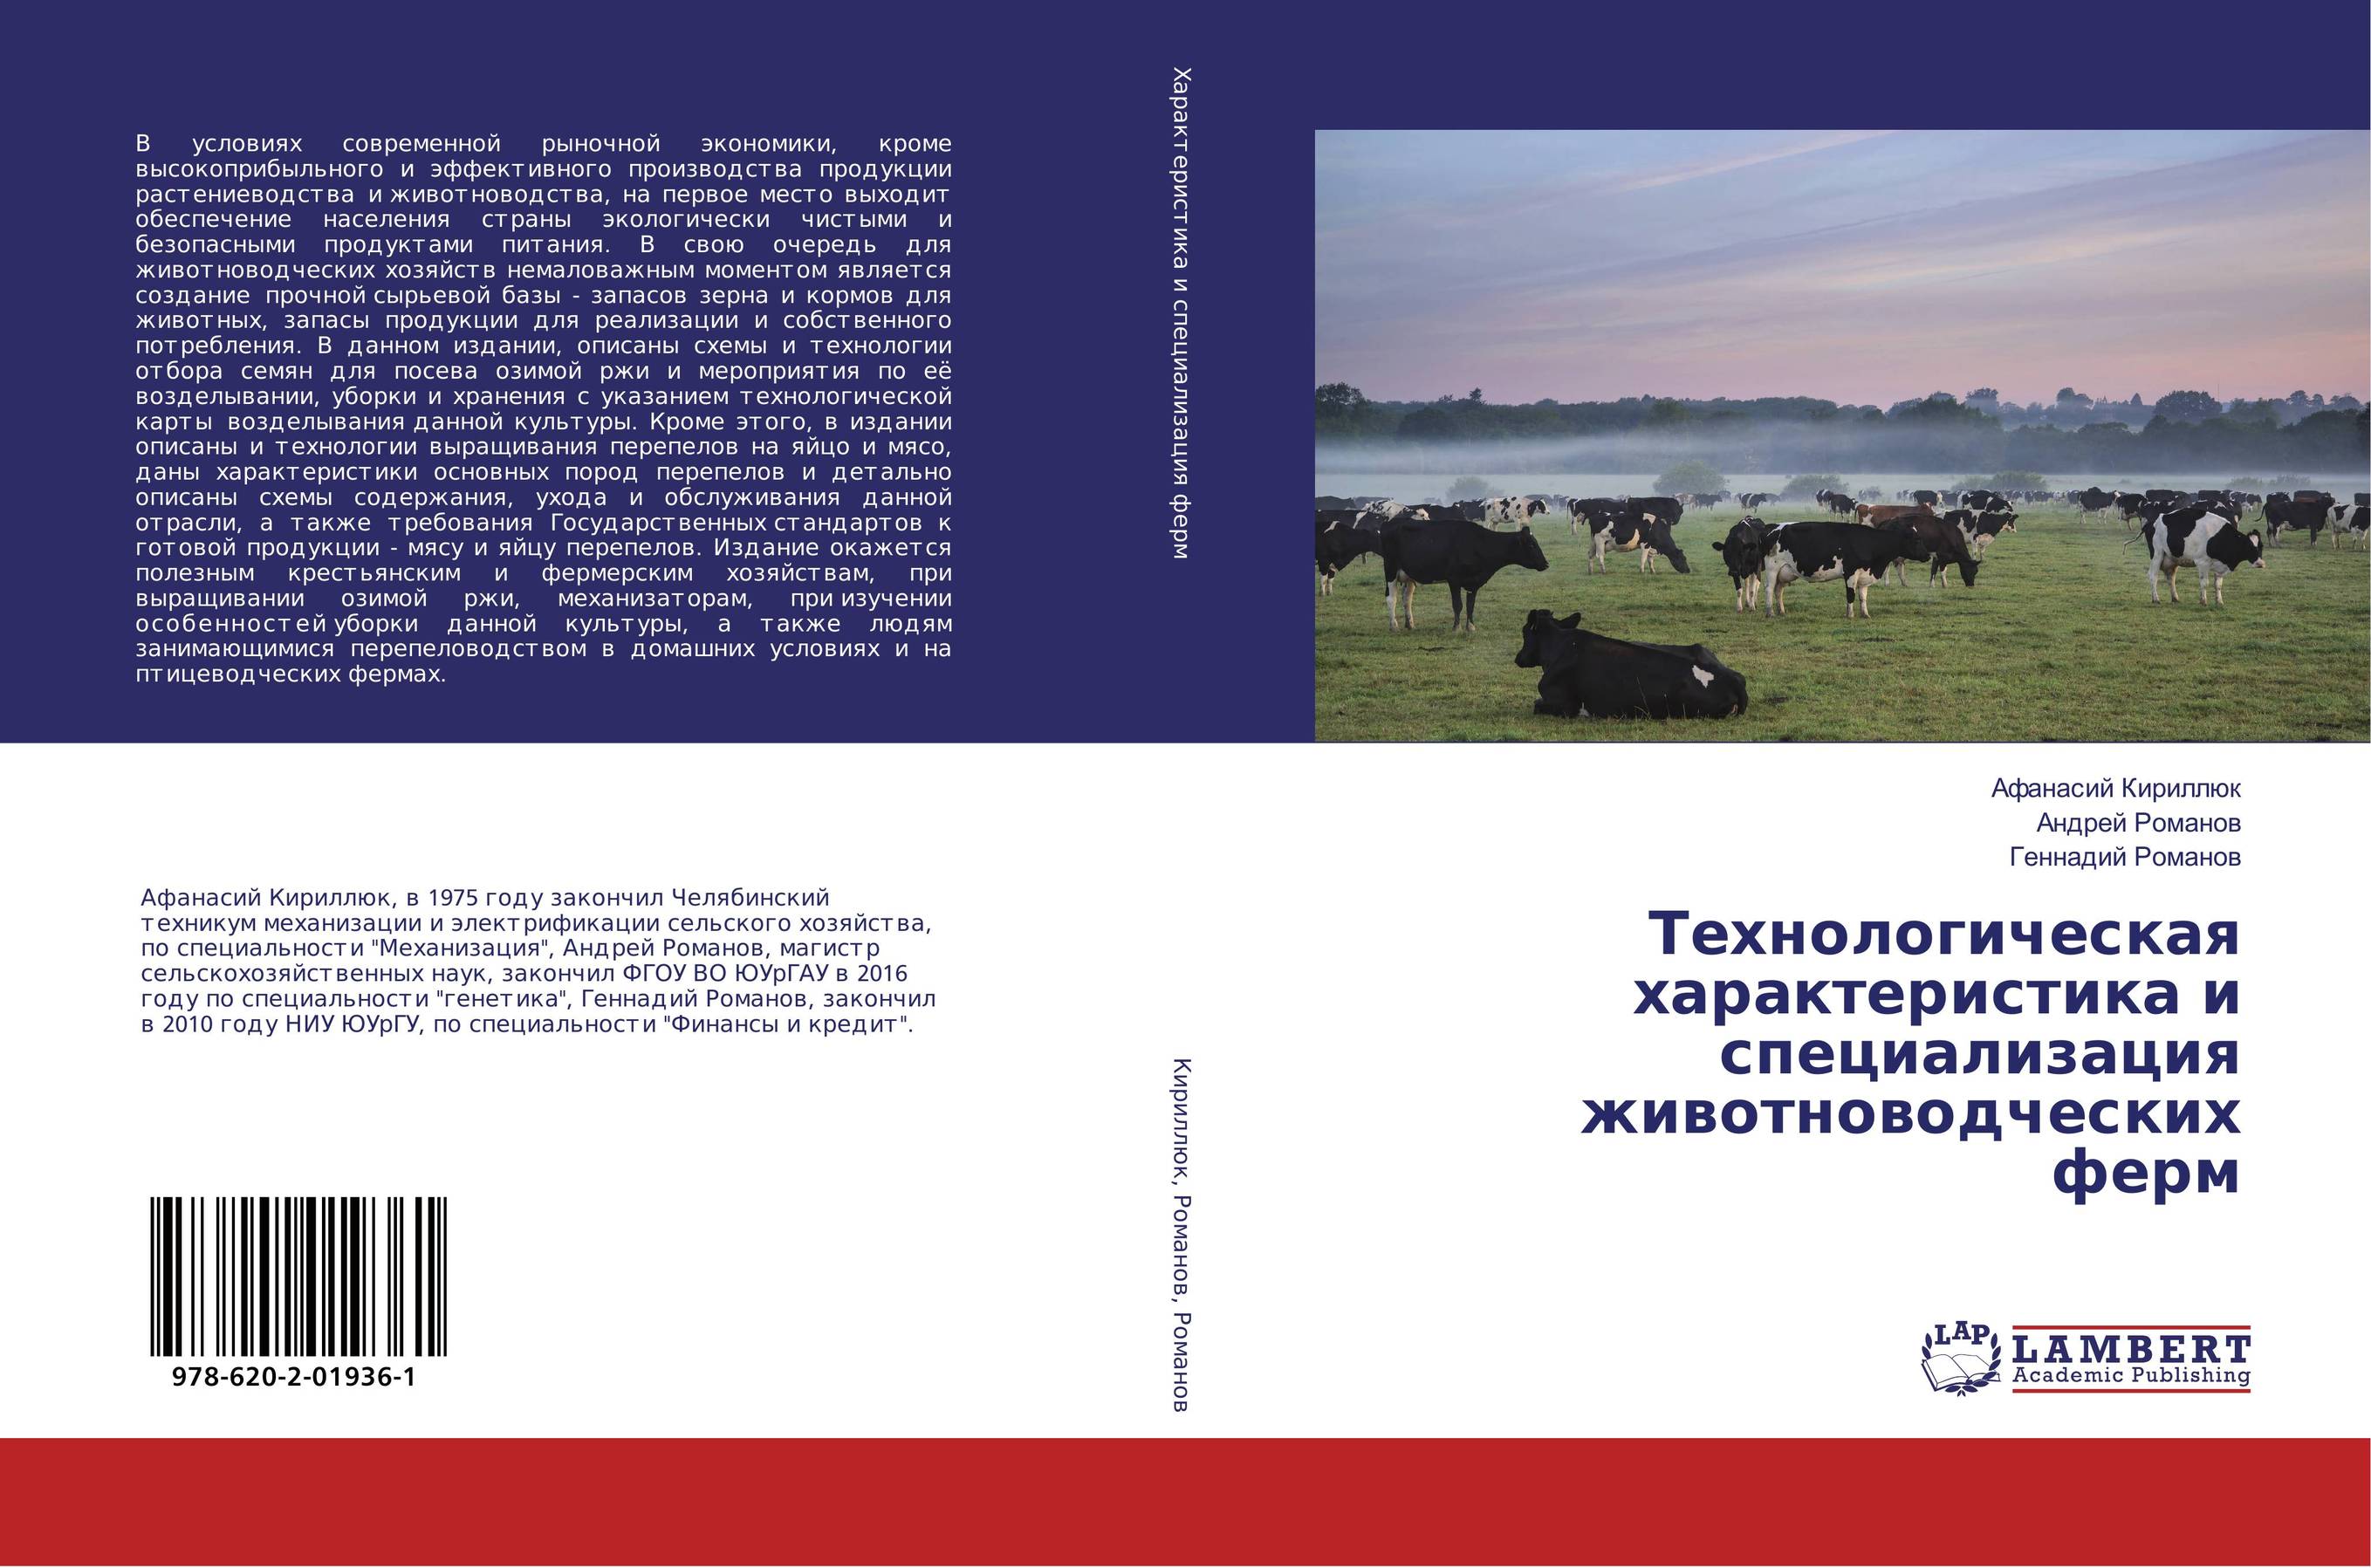 
        Технологическая характеристика и специализация животноводческих ферм..
      